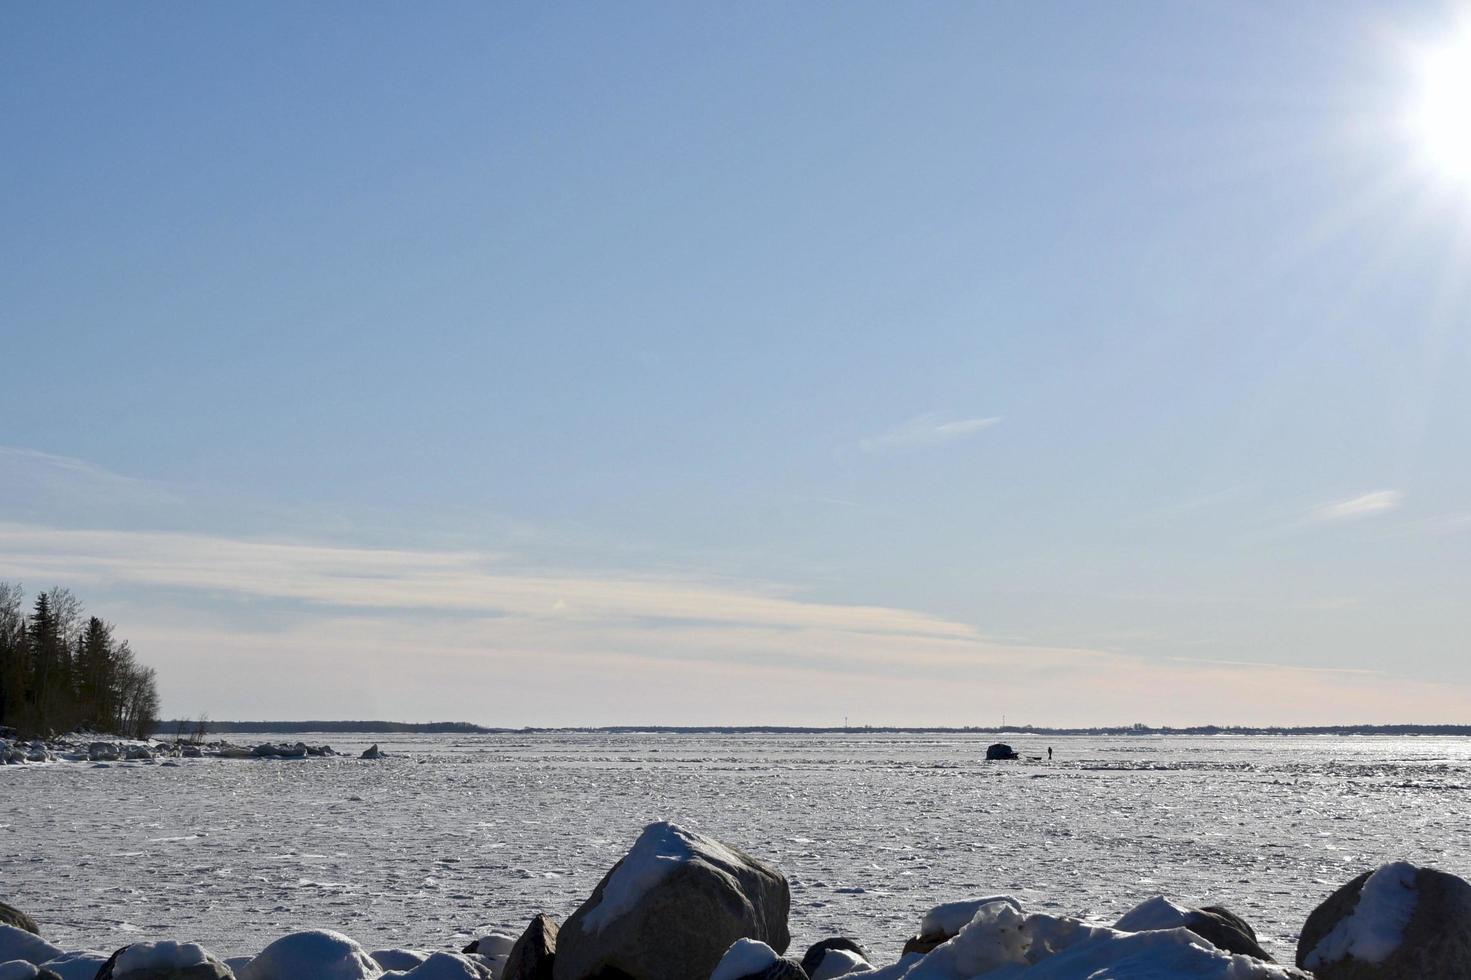 inverno a manitoba - pesca sul ghiaccio sul lago winnipeg foto